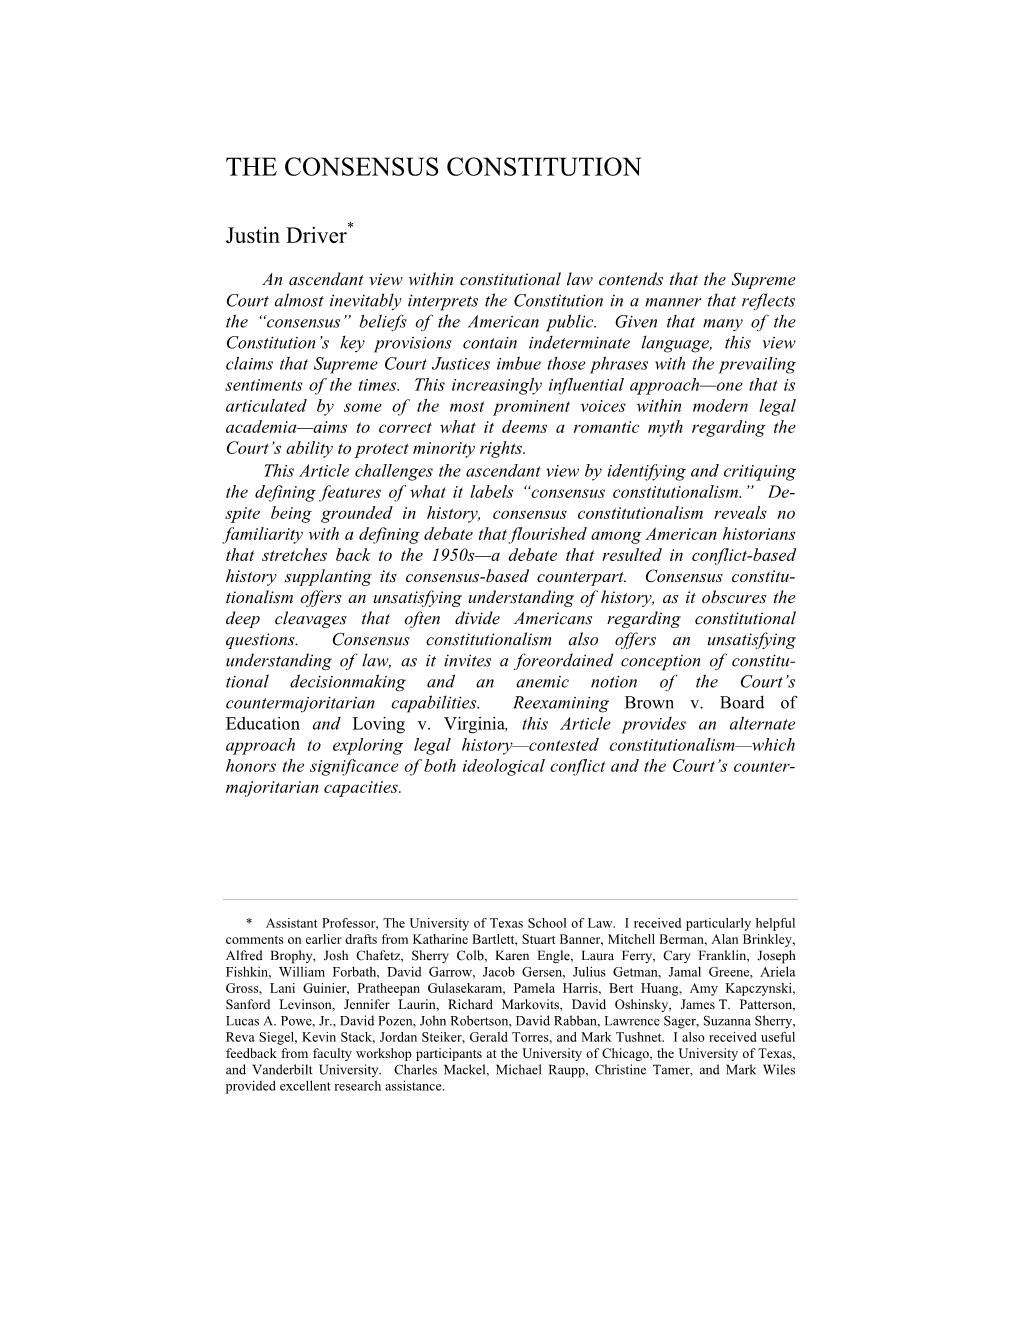 The Consensus Constitution